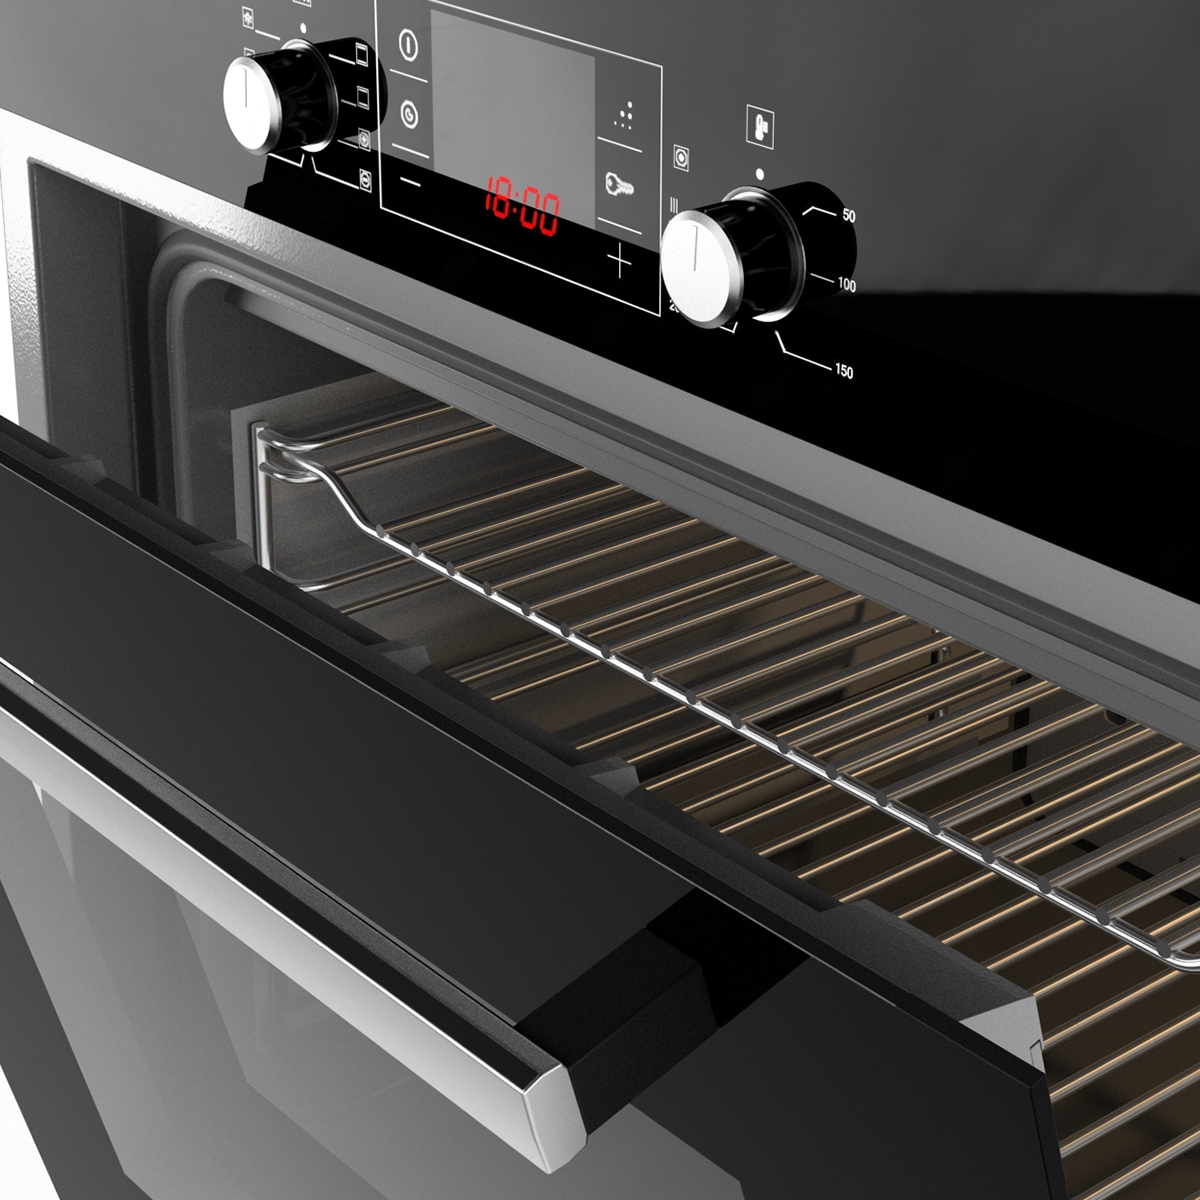 3dsmax vray Bosch black kitchen built-in CGI Render